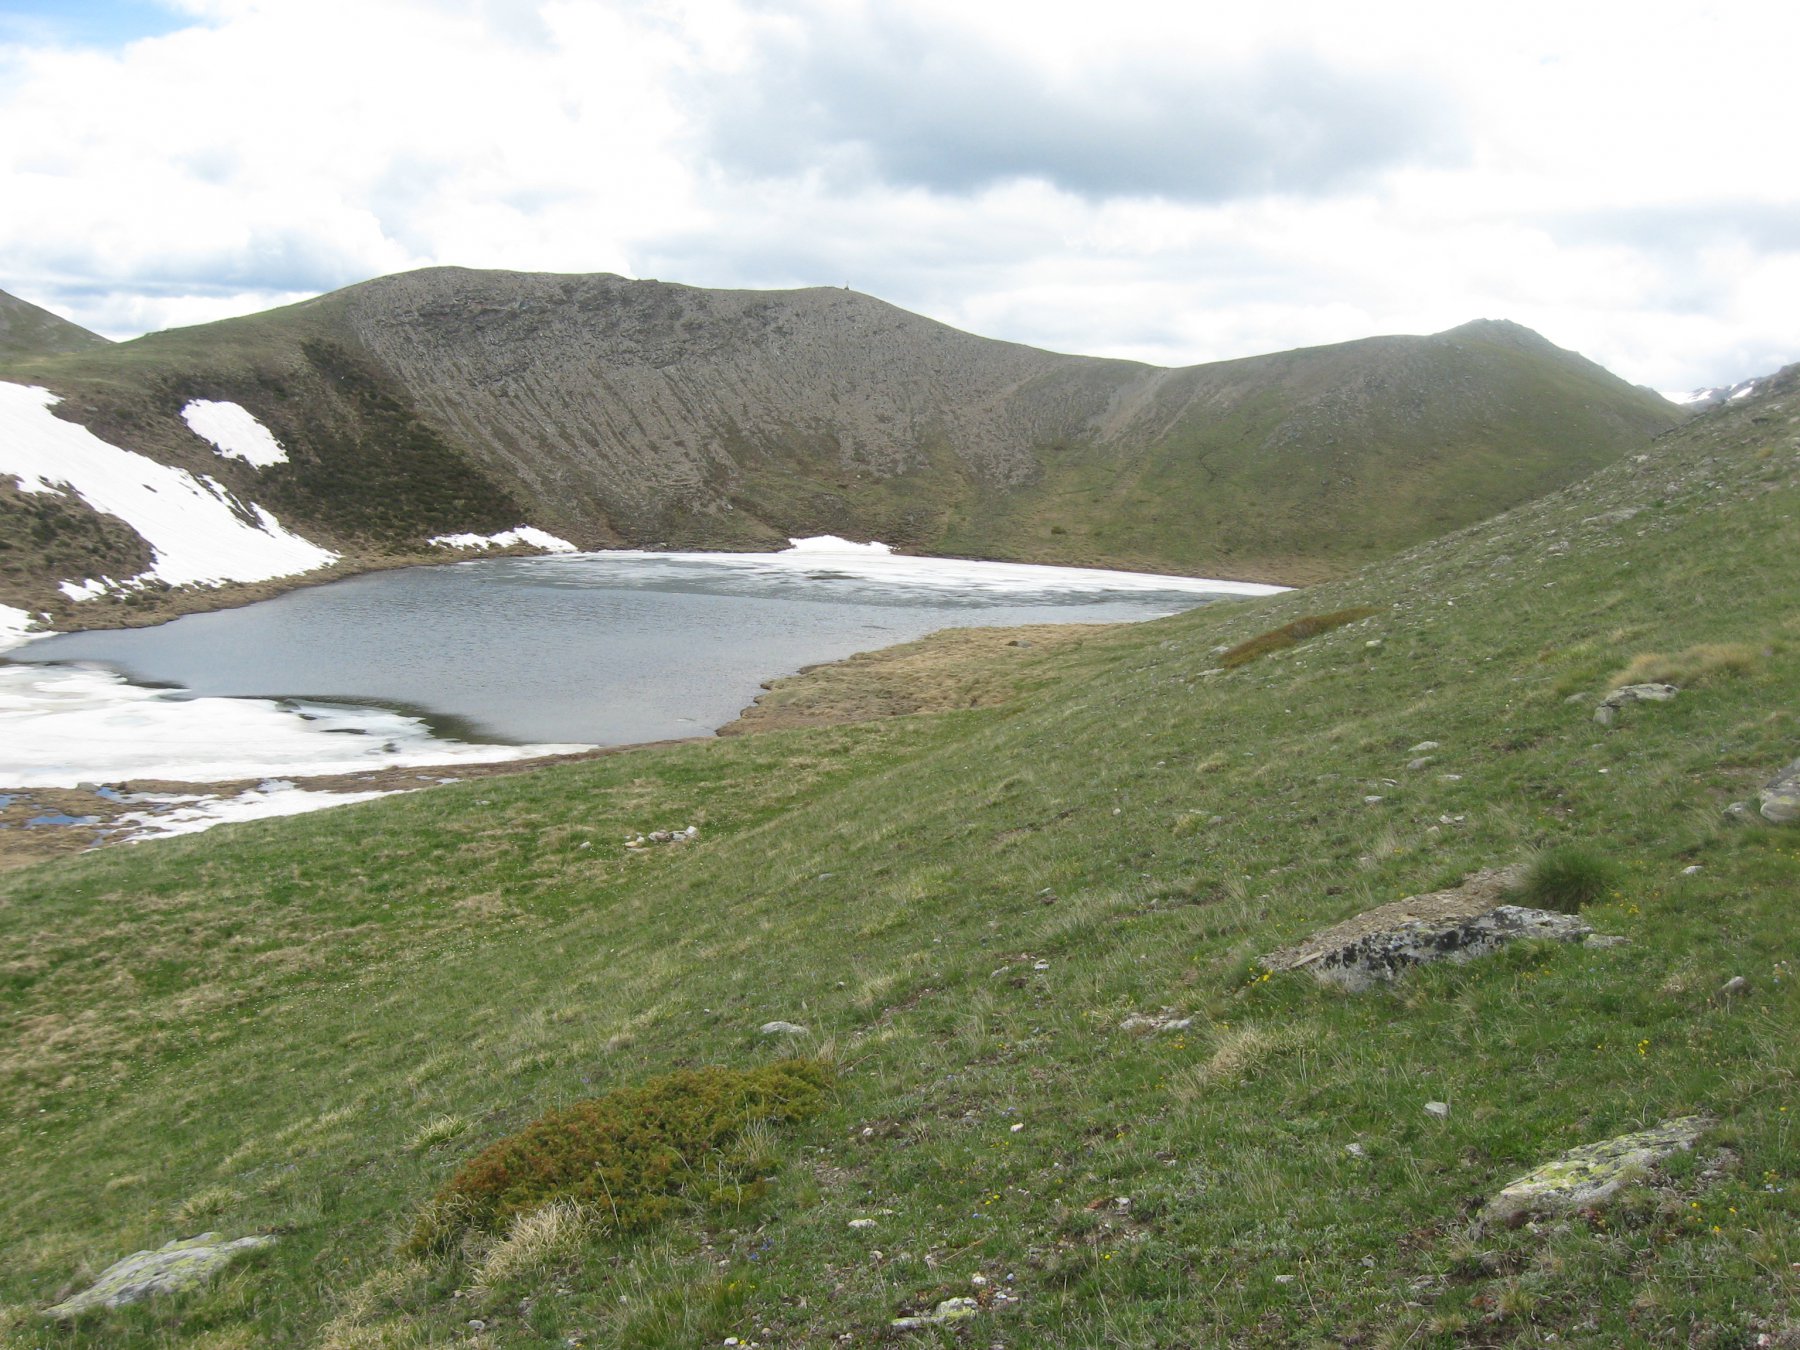 Il lago Cormet e le due punte del monte omonimo, sormontate da una croce